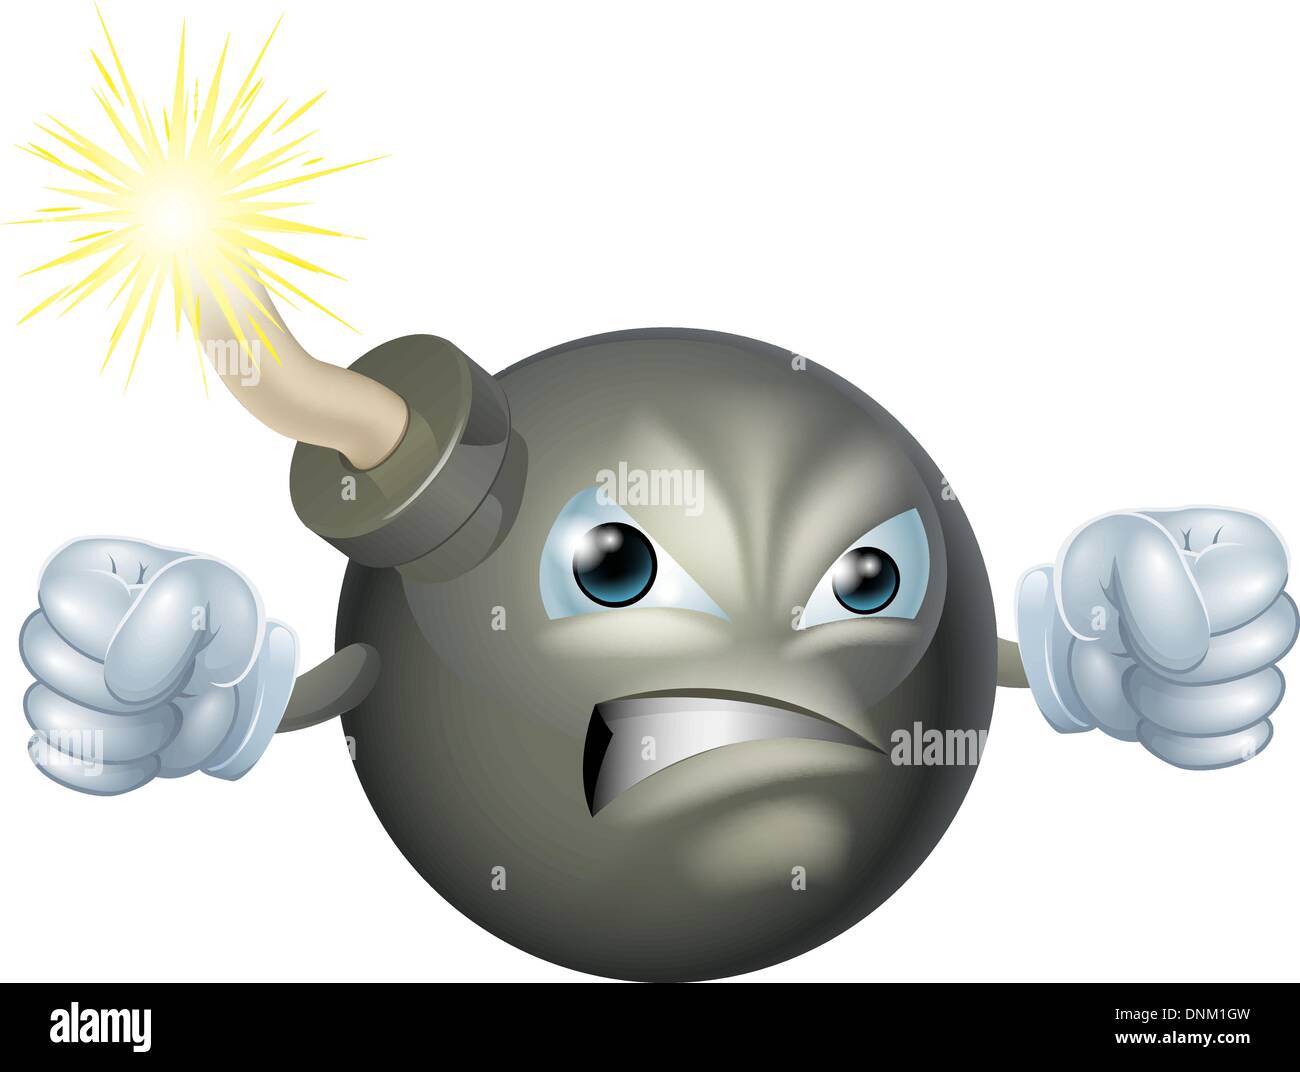 Ein Beispiel für eine böse aussehende Zeichentrickfigur Bombe Stock Vektor